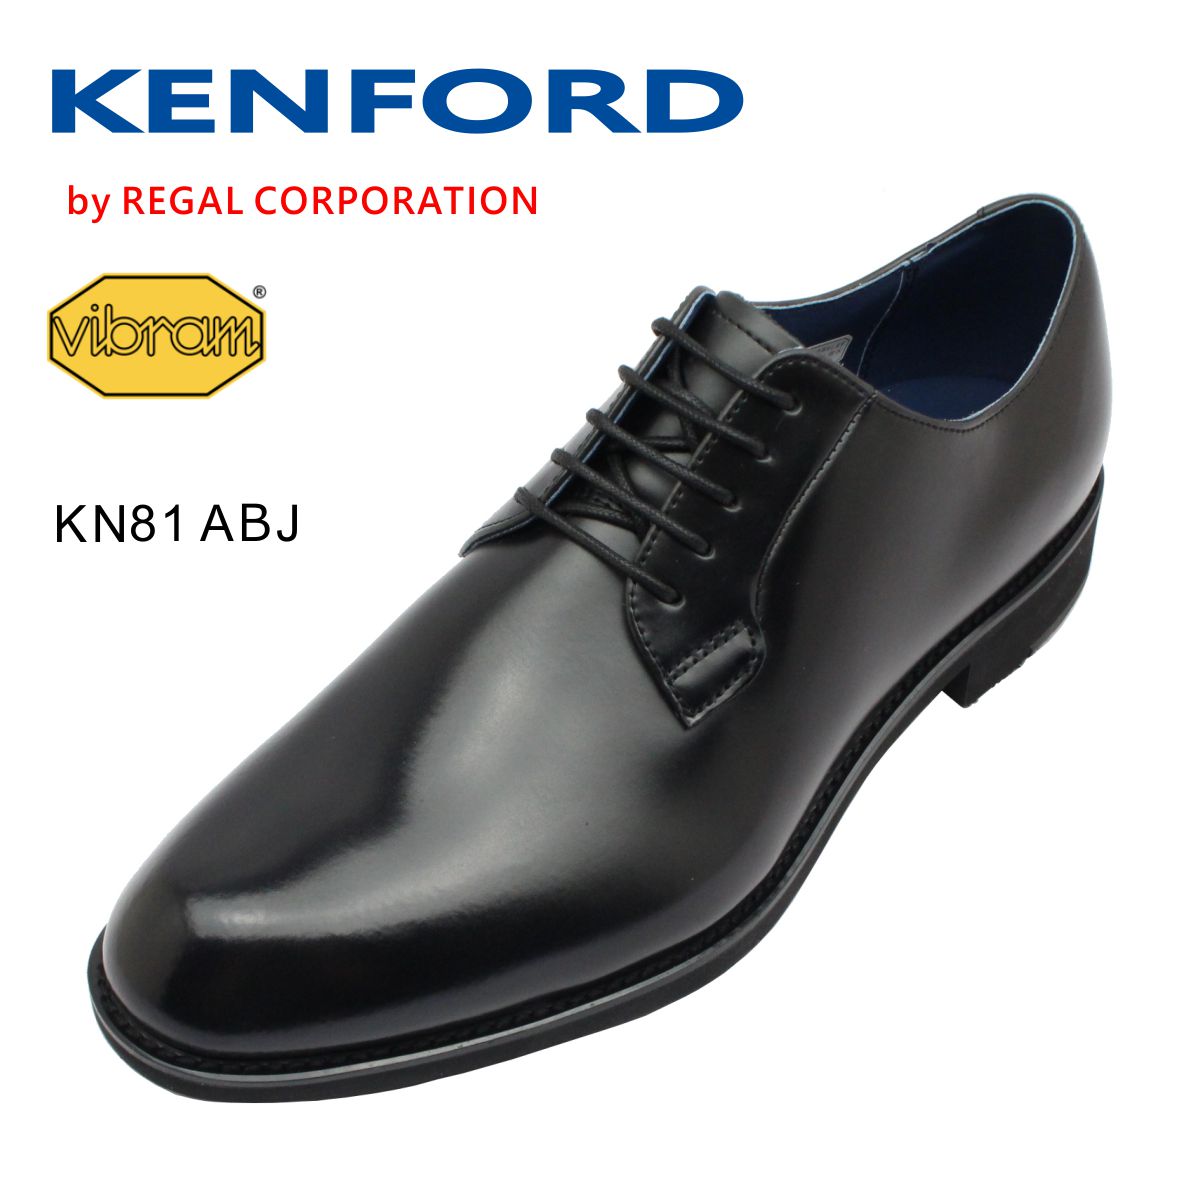 リーガル ビジネスシューズ メンズ KENFORD ケンフォード メンズ KN81 ABJ 3E プレーントゥ ビジネスシューズ 防滑 外羽式 紳士靴 本革 ヴィブラム リーガル ブラック